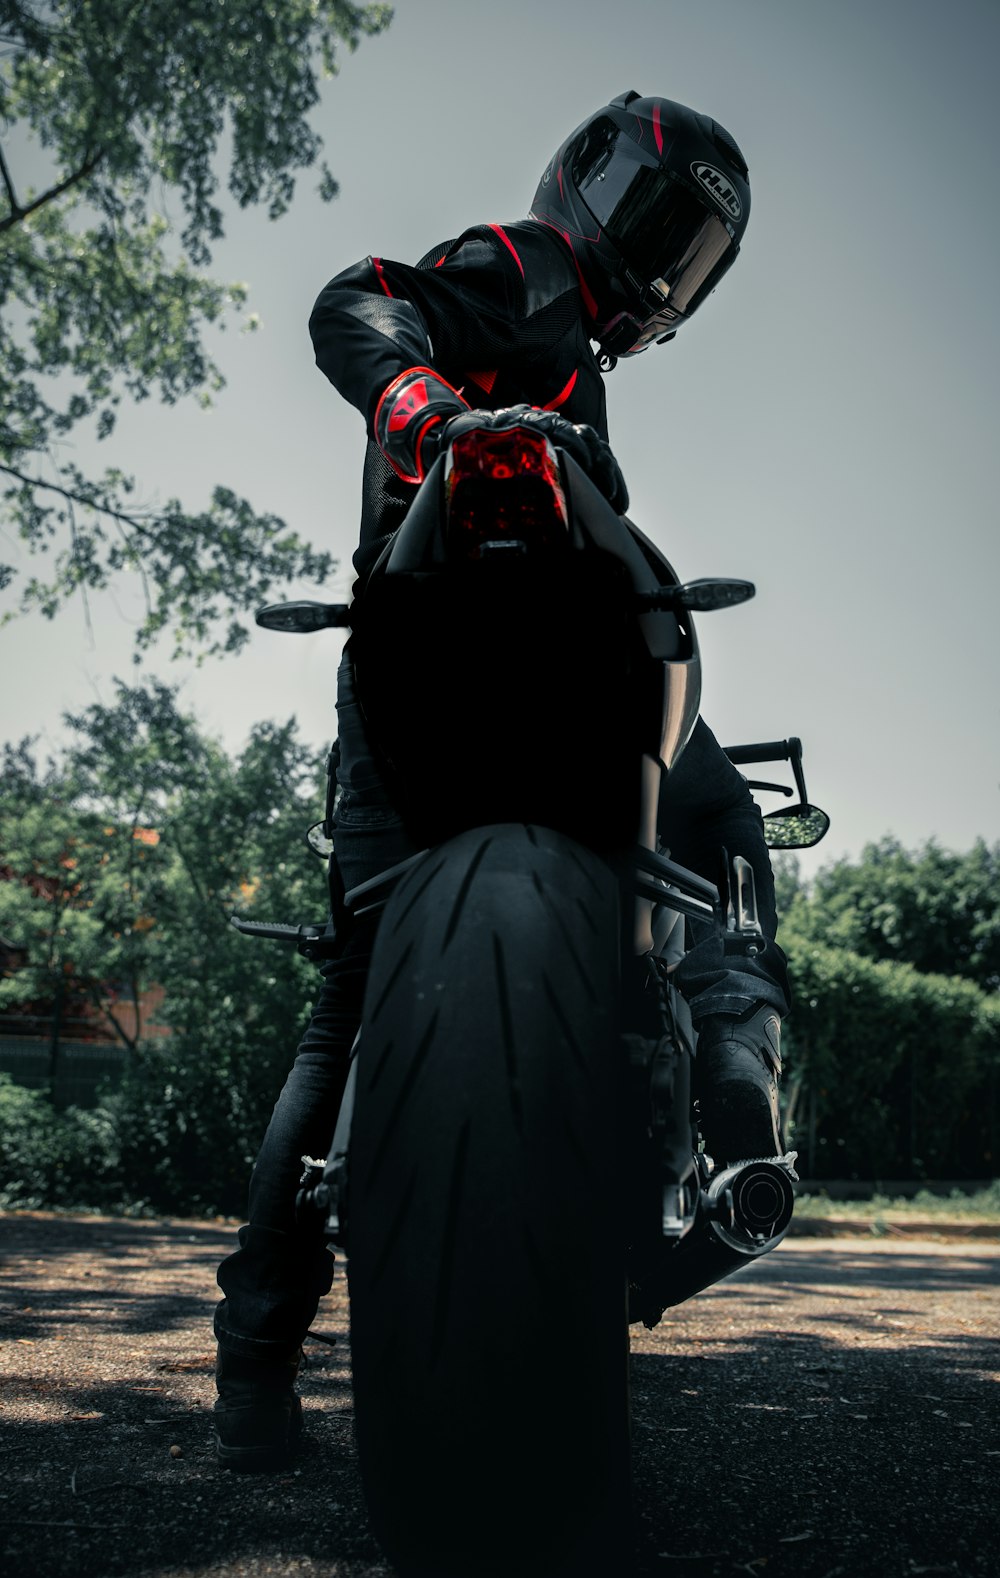 Mann in schwarzer Lederjacke fährt schwarzes Motorrad